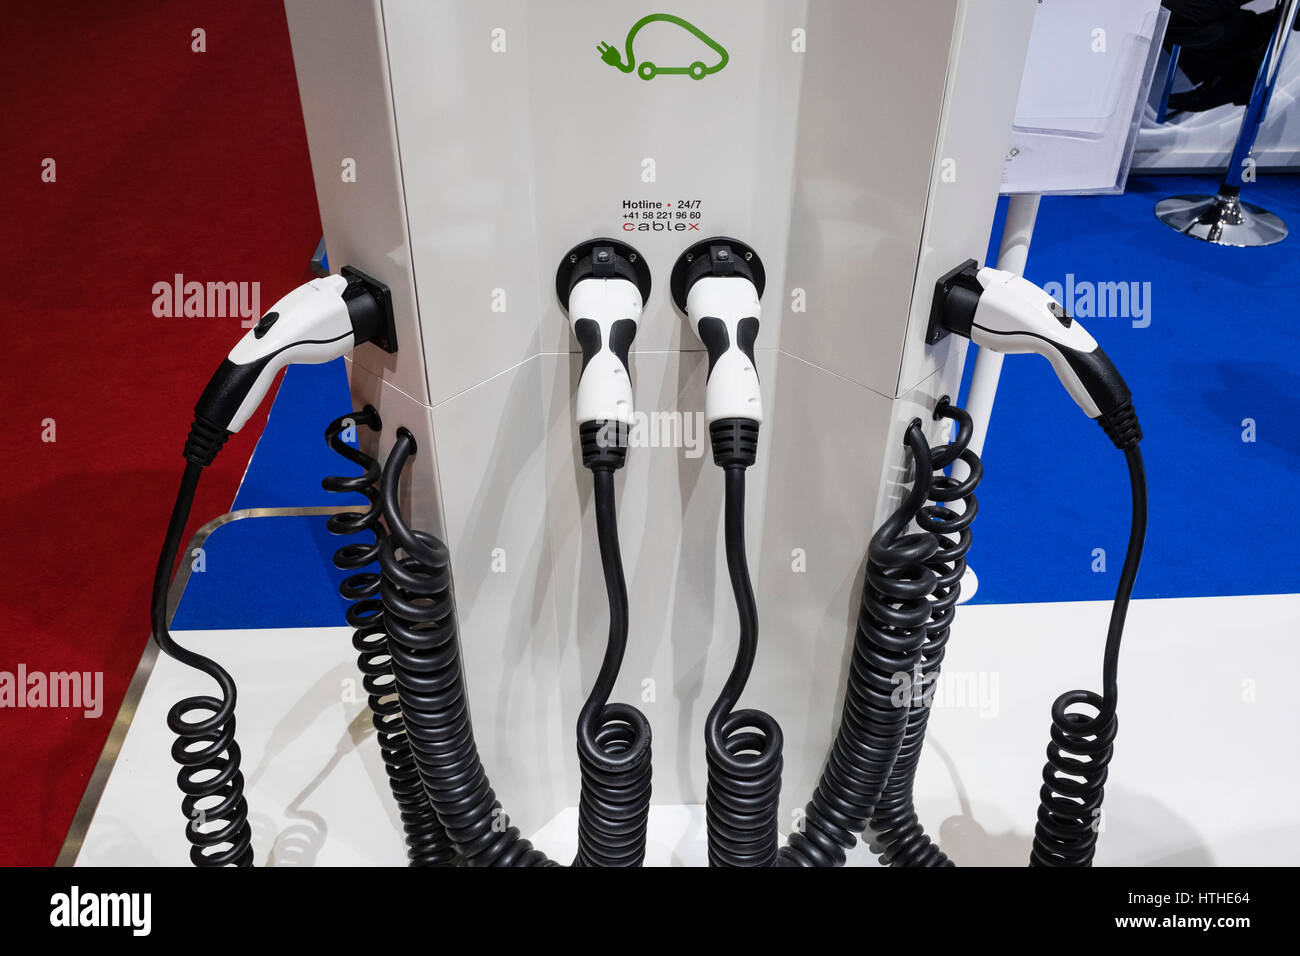 Affichage de la station de recharge pour voitures électriques au 87e Salon International de l'Automobile à Genève Suisse 2017 Banque D'Images